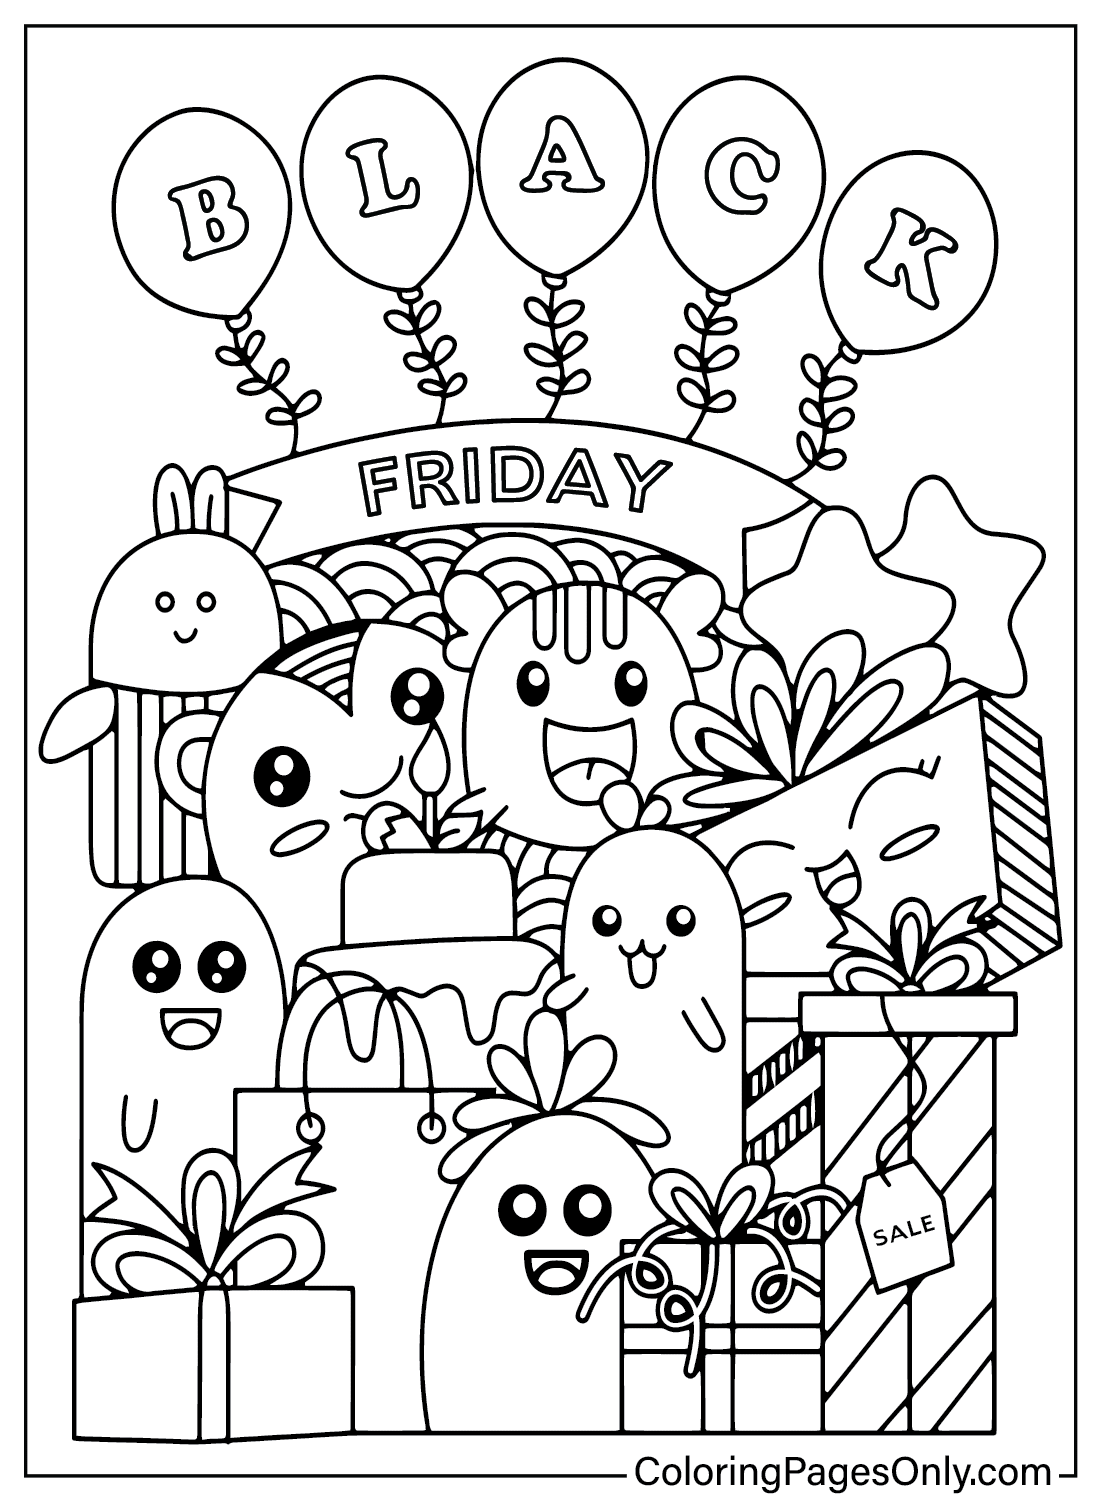 Black Friday-kleurplaat Gratis printbaar vanaf Black Friday